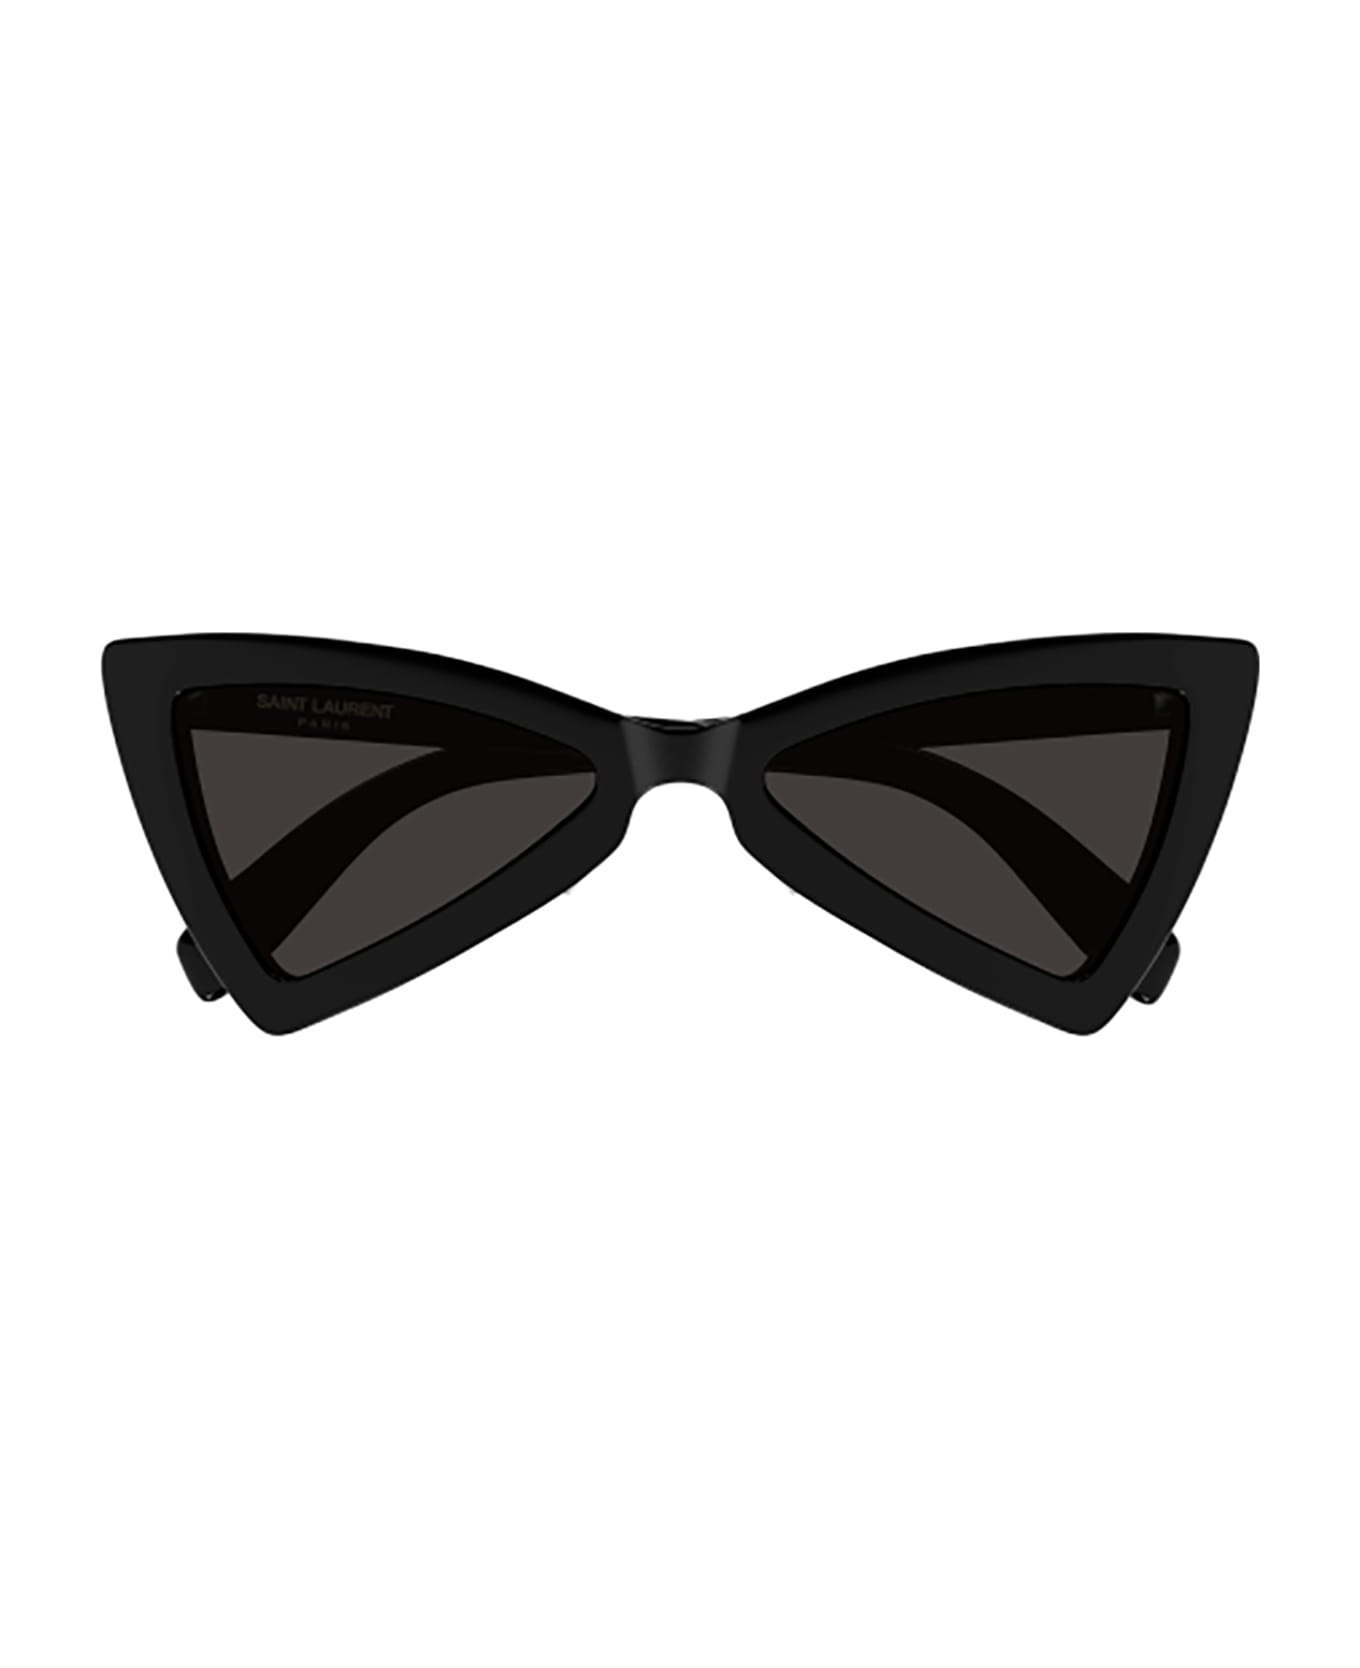 Saint Laurent Eyewear SL 207 JERRY Sunglasses - Black Black Black サングラス